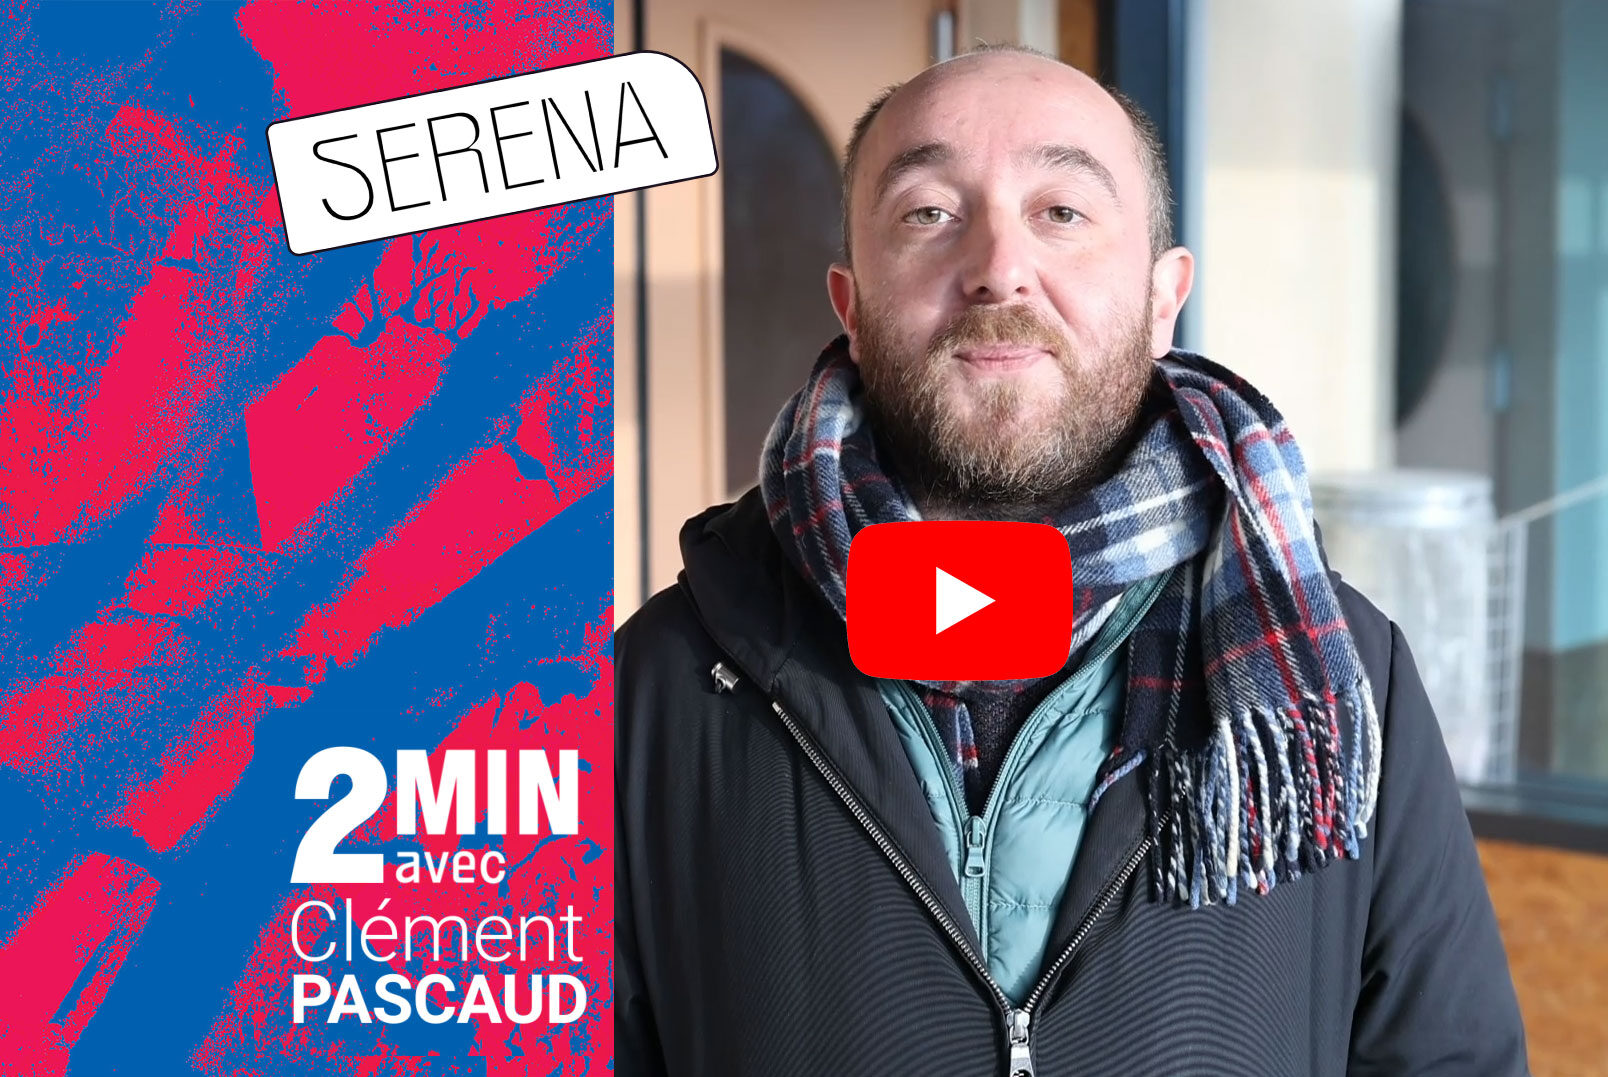 2 MIN AVEC... Clément Pascaud / SERENA - Saison culturelle de l'Ernée